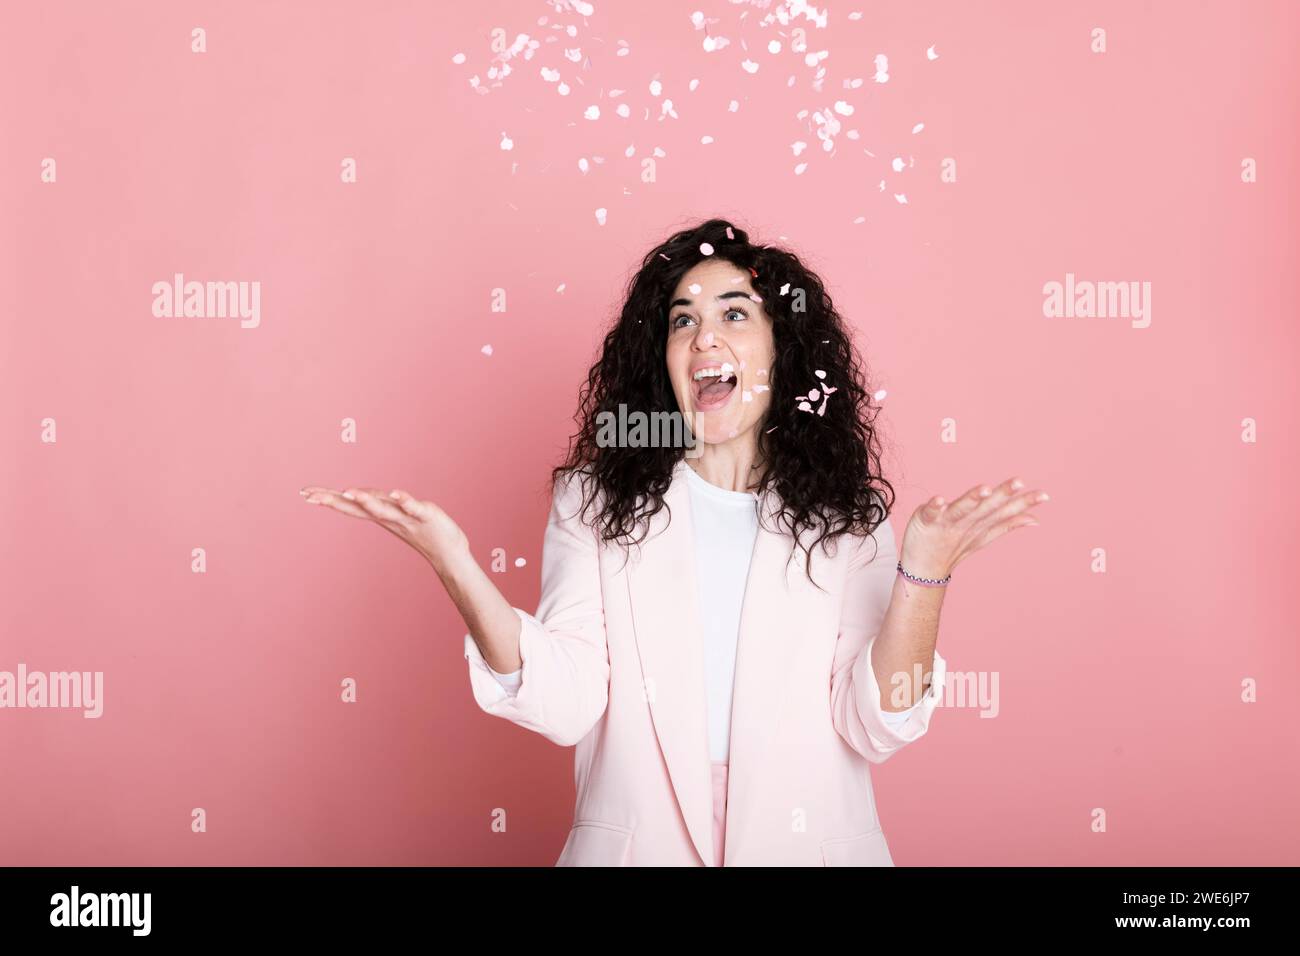 Jeune femme joyeuse attrapant des confettis sur fond rose Banque D'Images